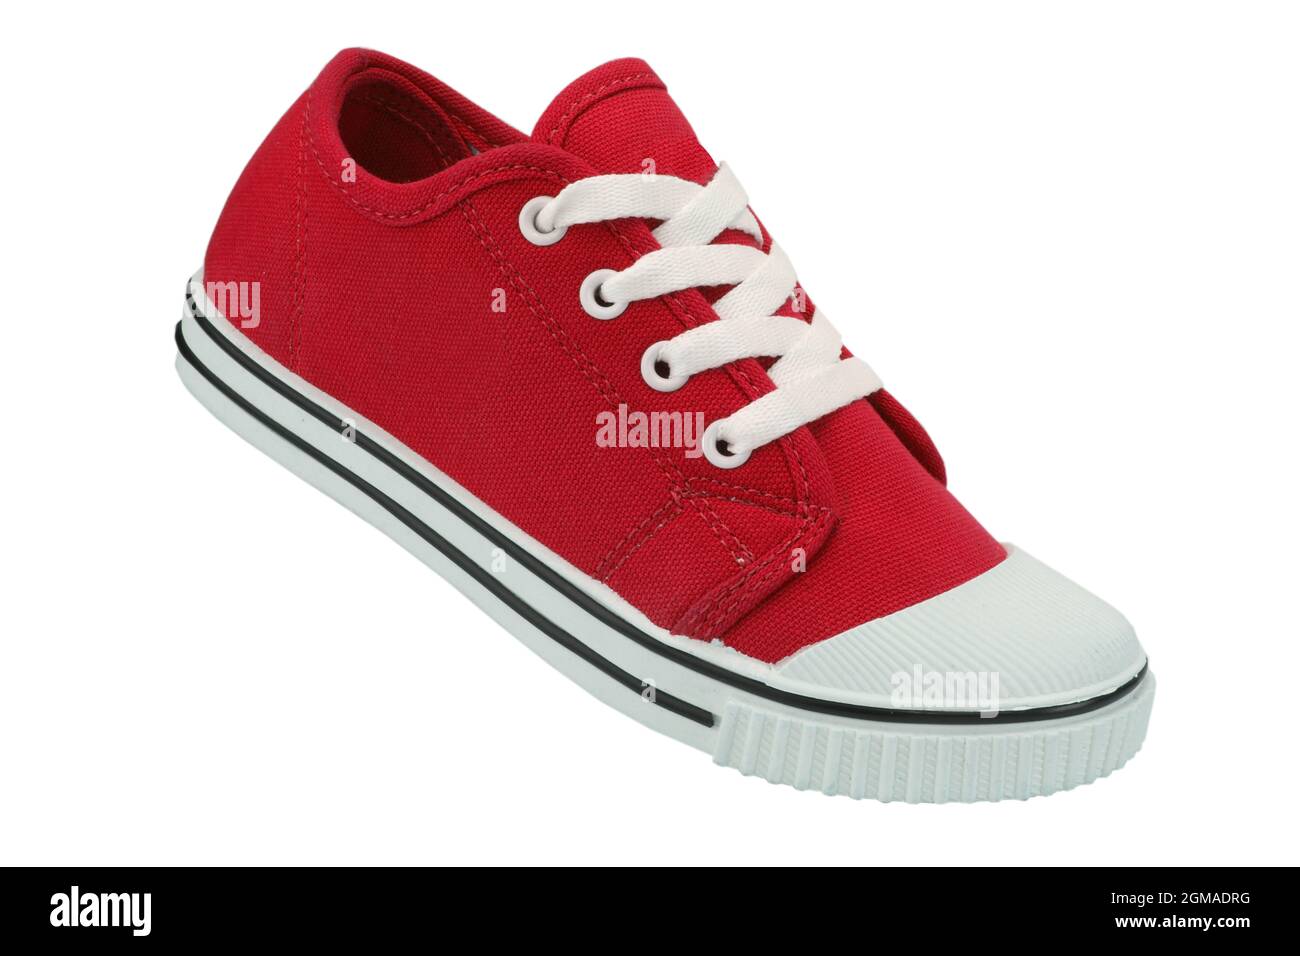 zapato de lona roja aislado sobre fondo blanco, zapatos de lona para niños Foto de stock